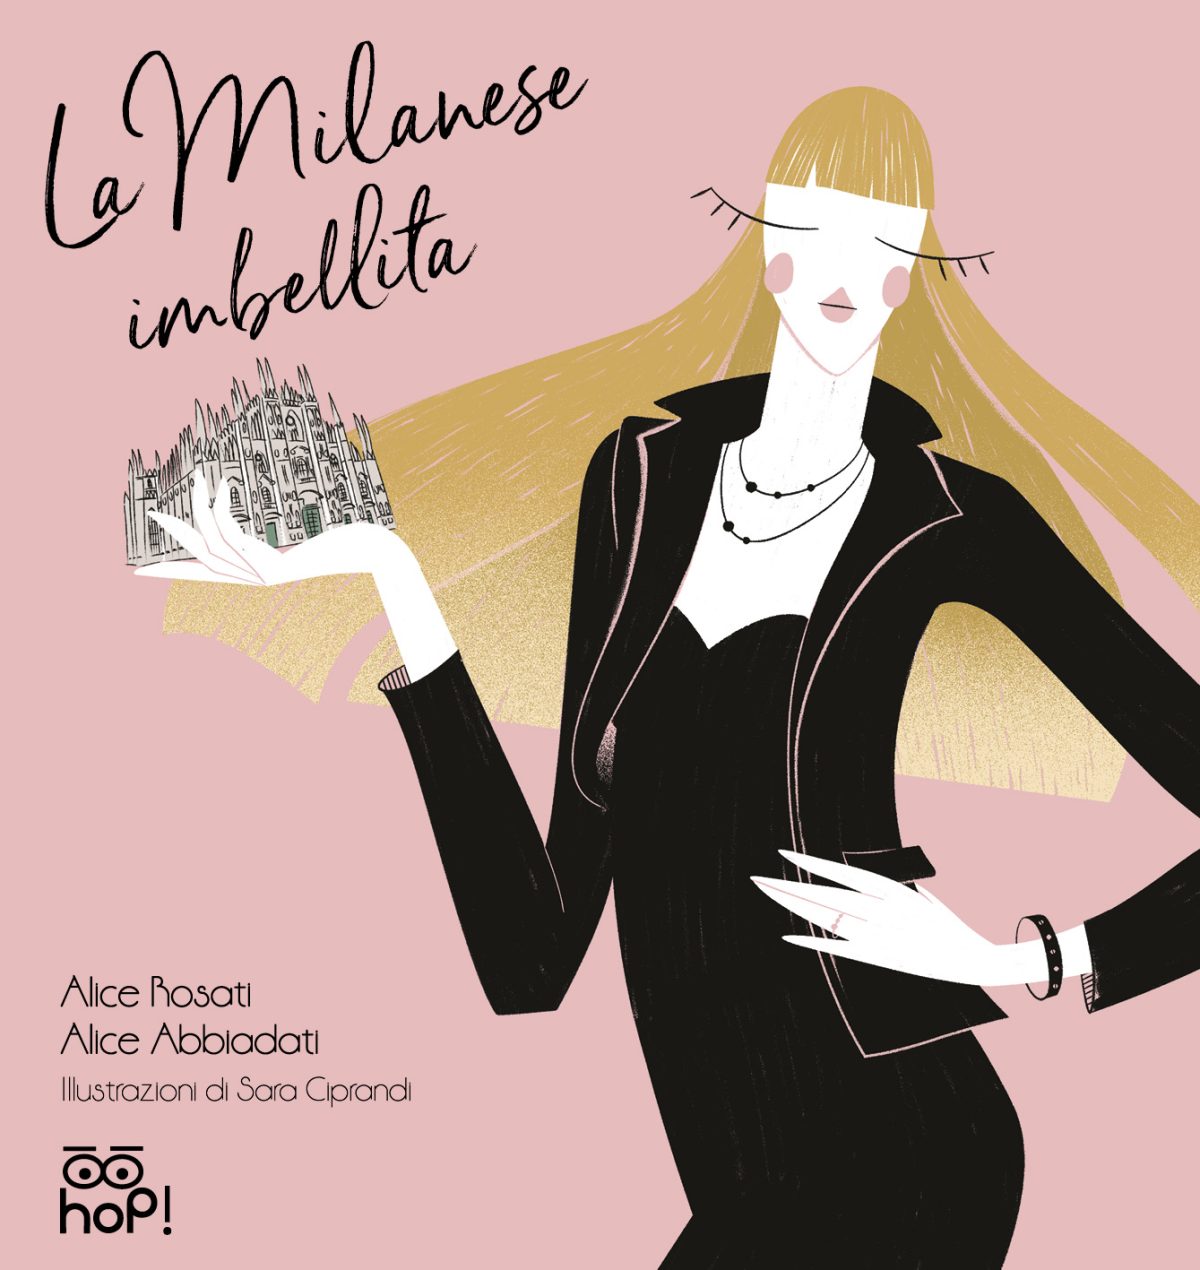 La Milanese imbellita: guida pratica per diventare una perfetta milanese